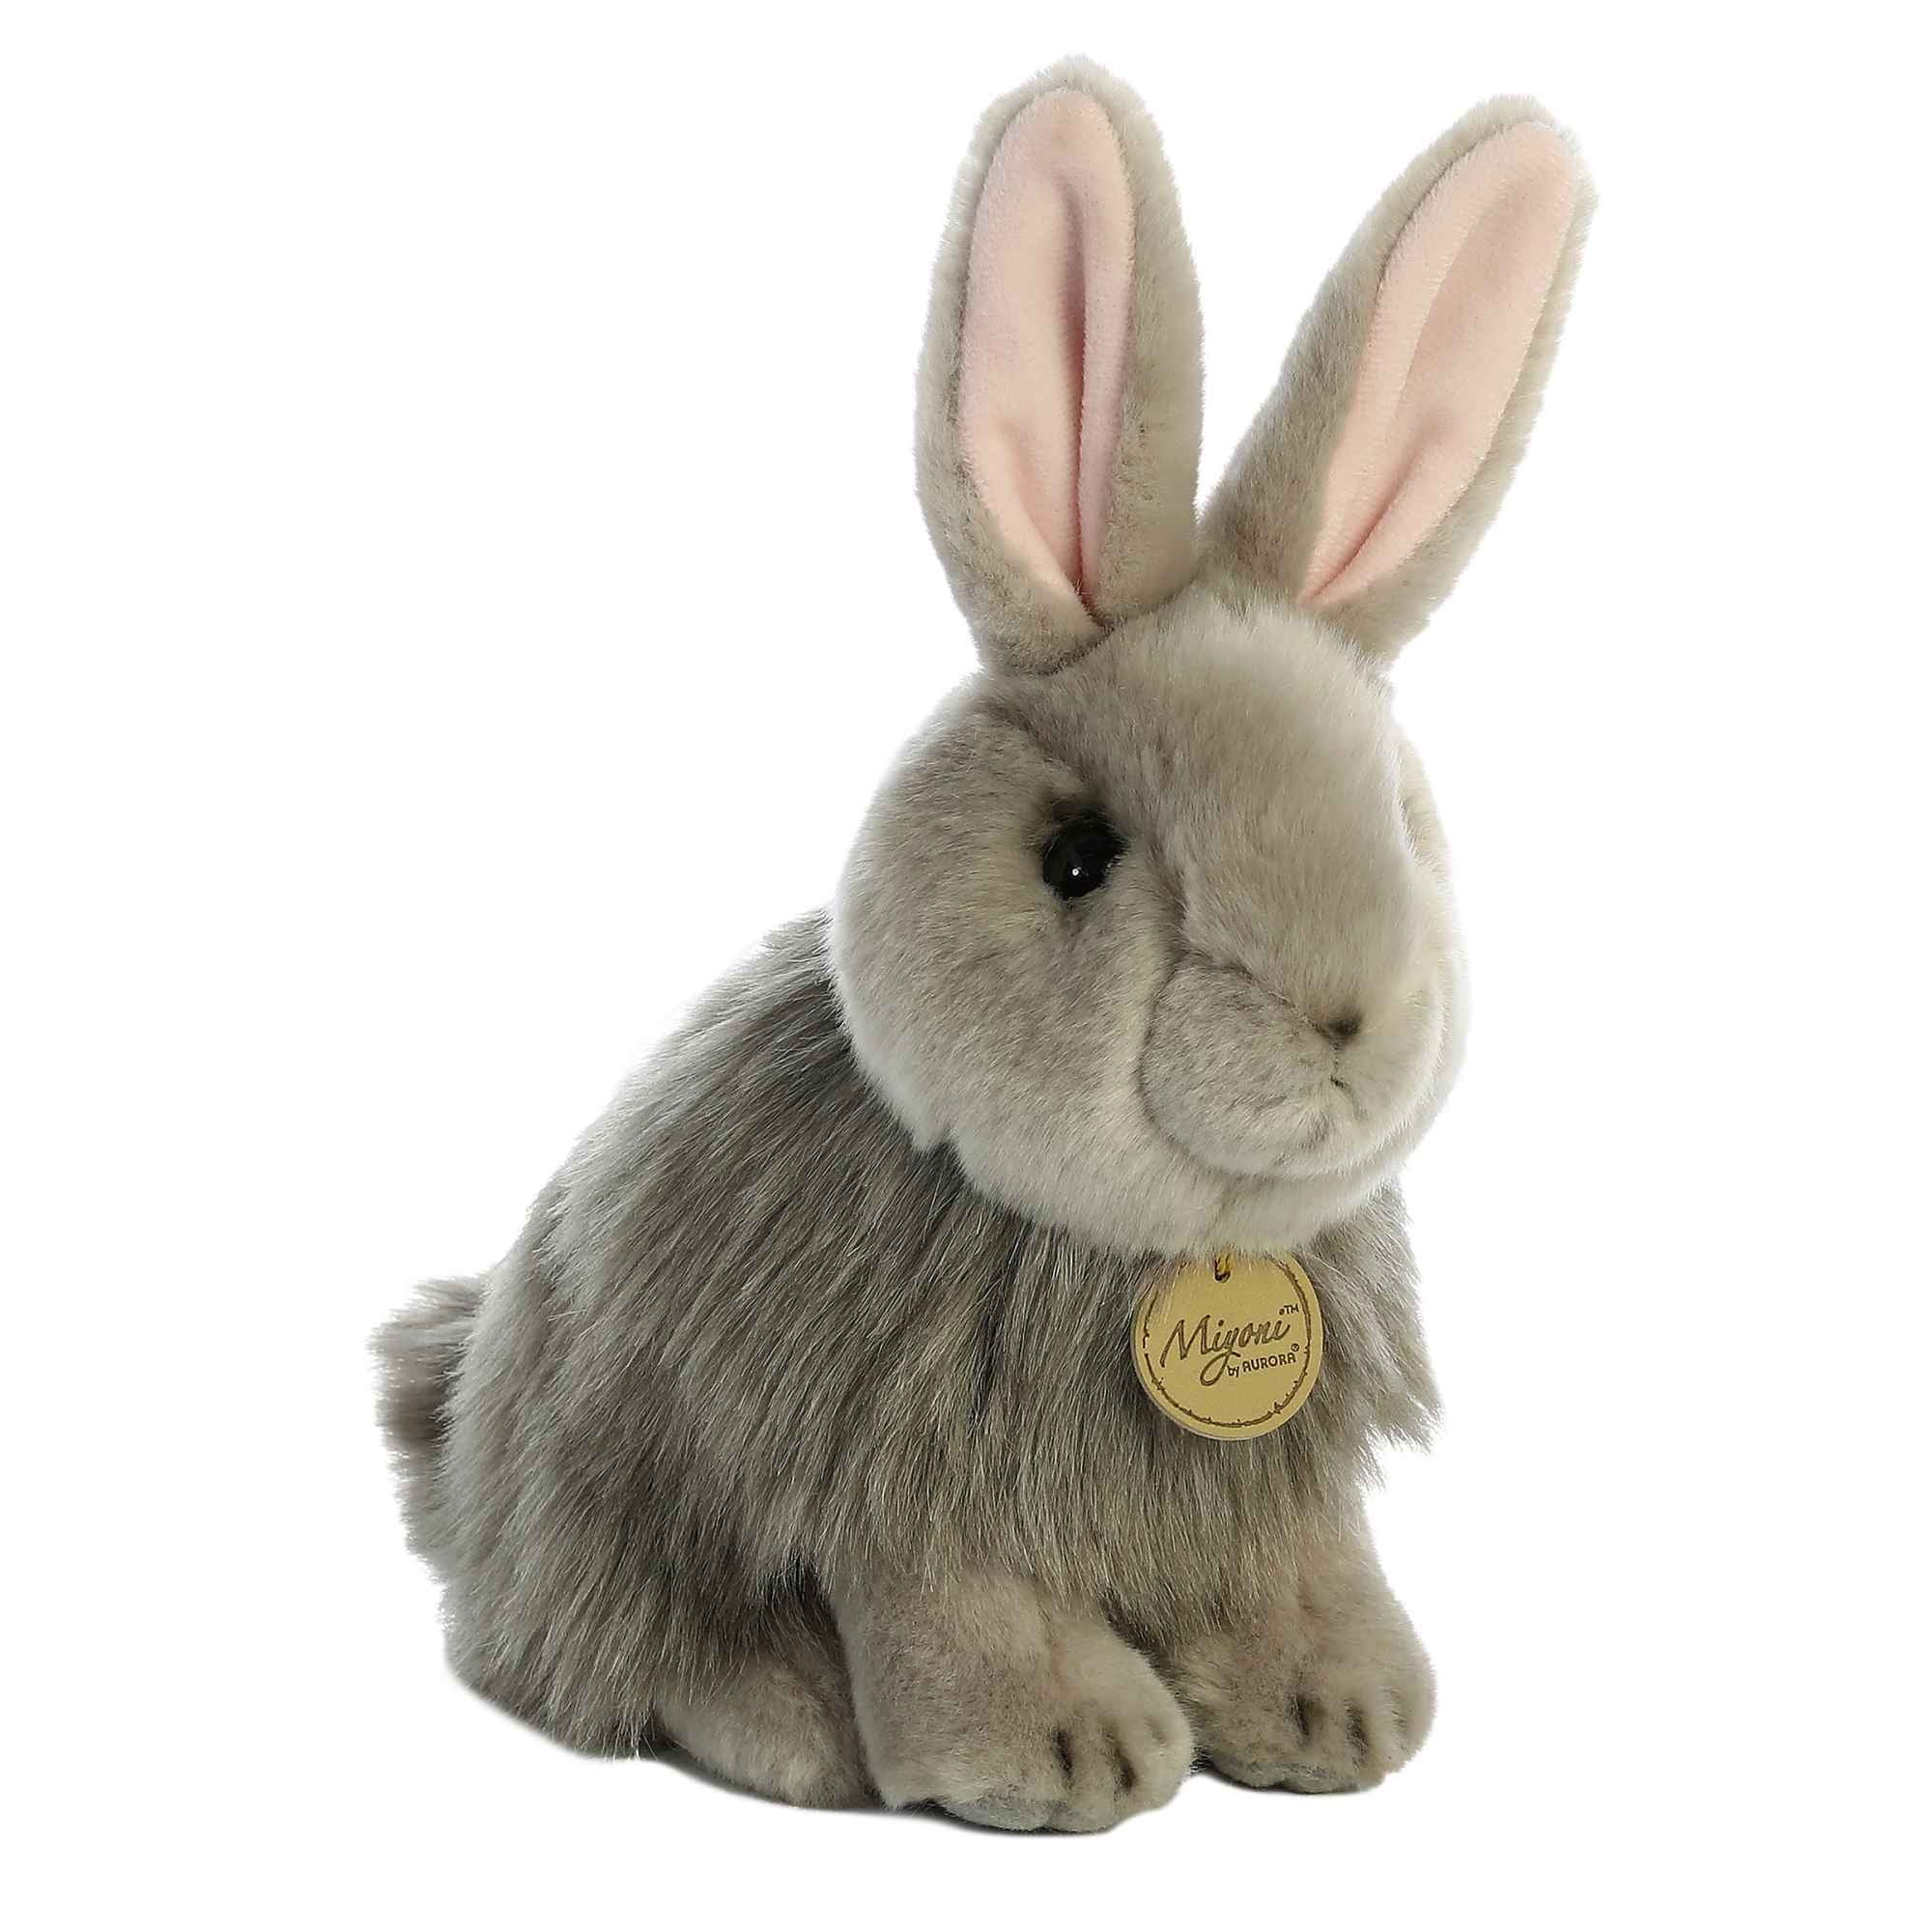 Lop Eared Bunny Rabbit Sitting Miyoni 7.5-10 in Plush Stuffed Toy Animal AU26171 